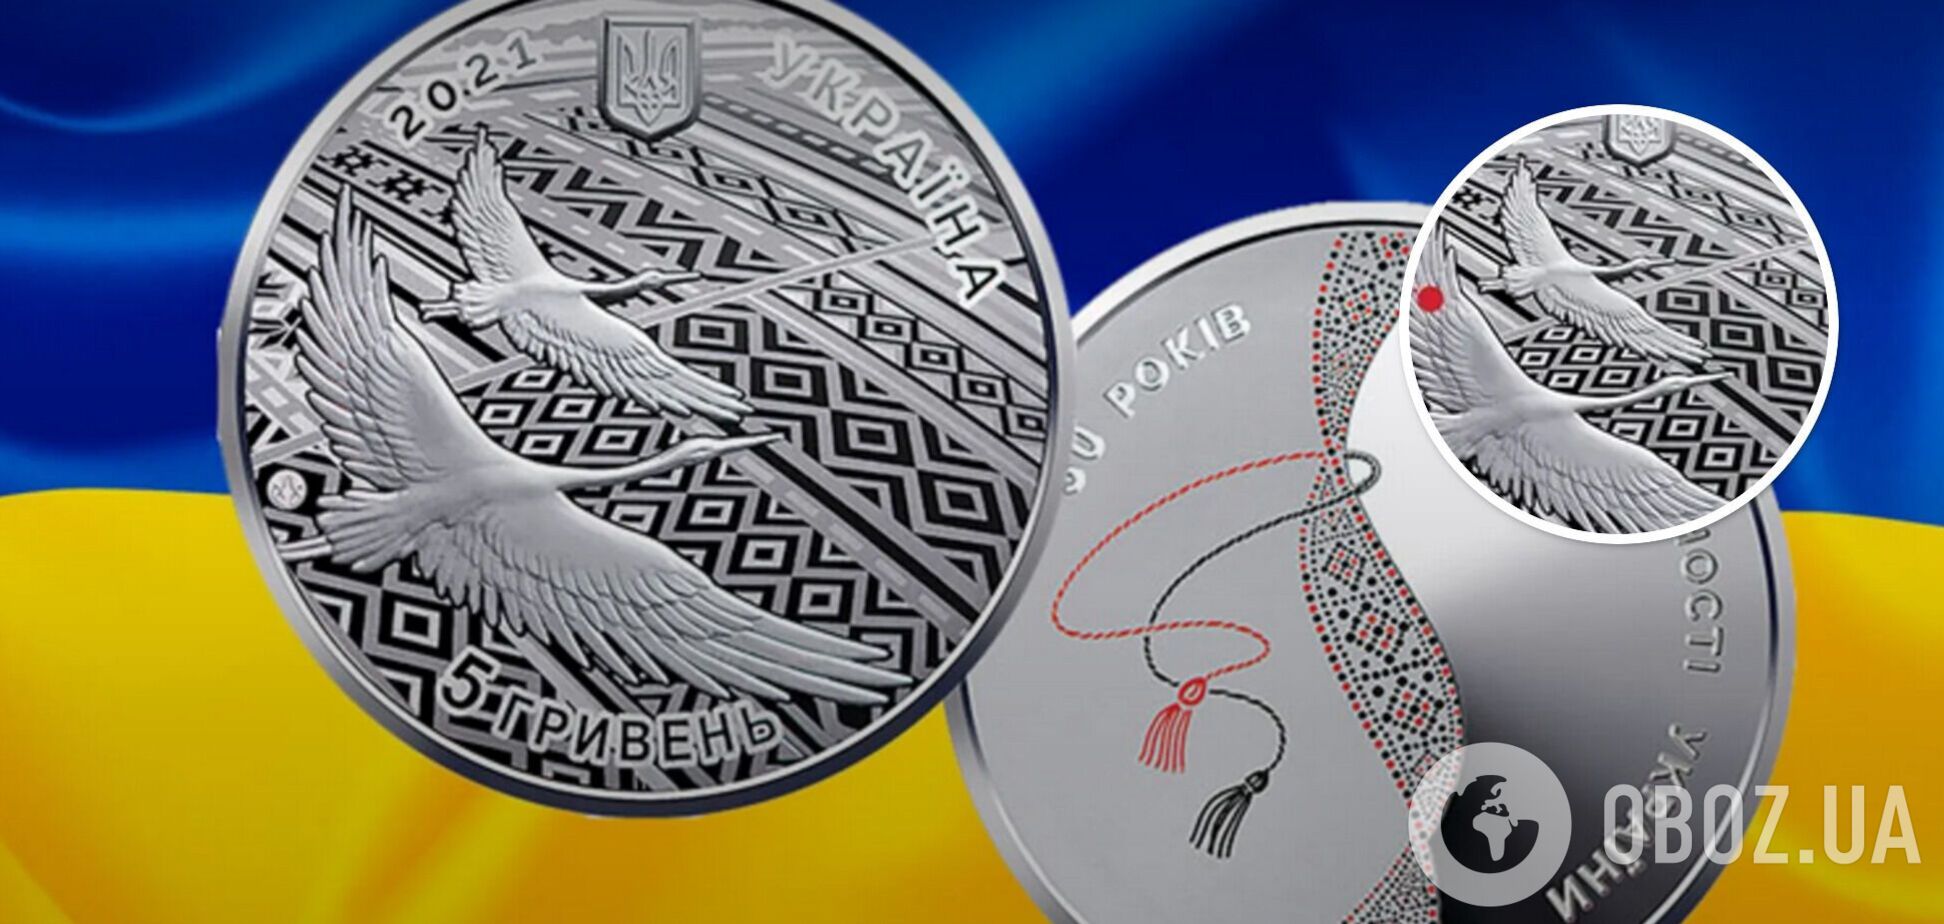 Украинская монета стала победила в международном конкурсе